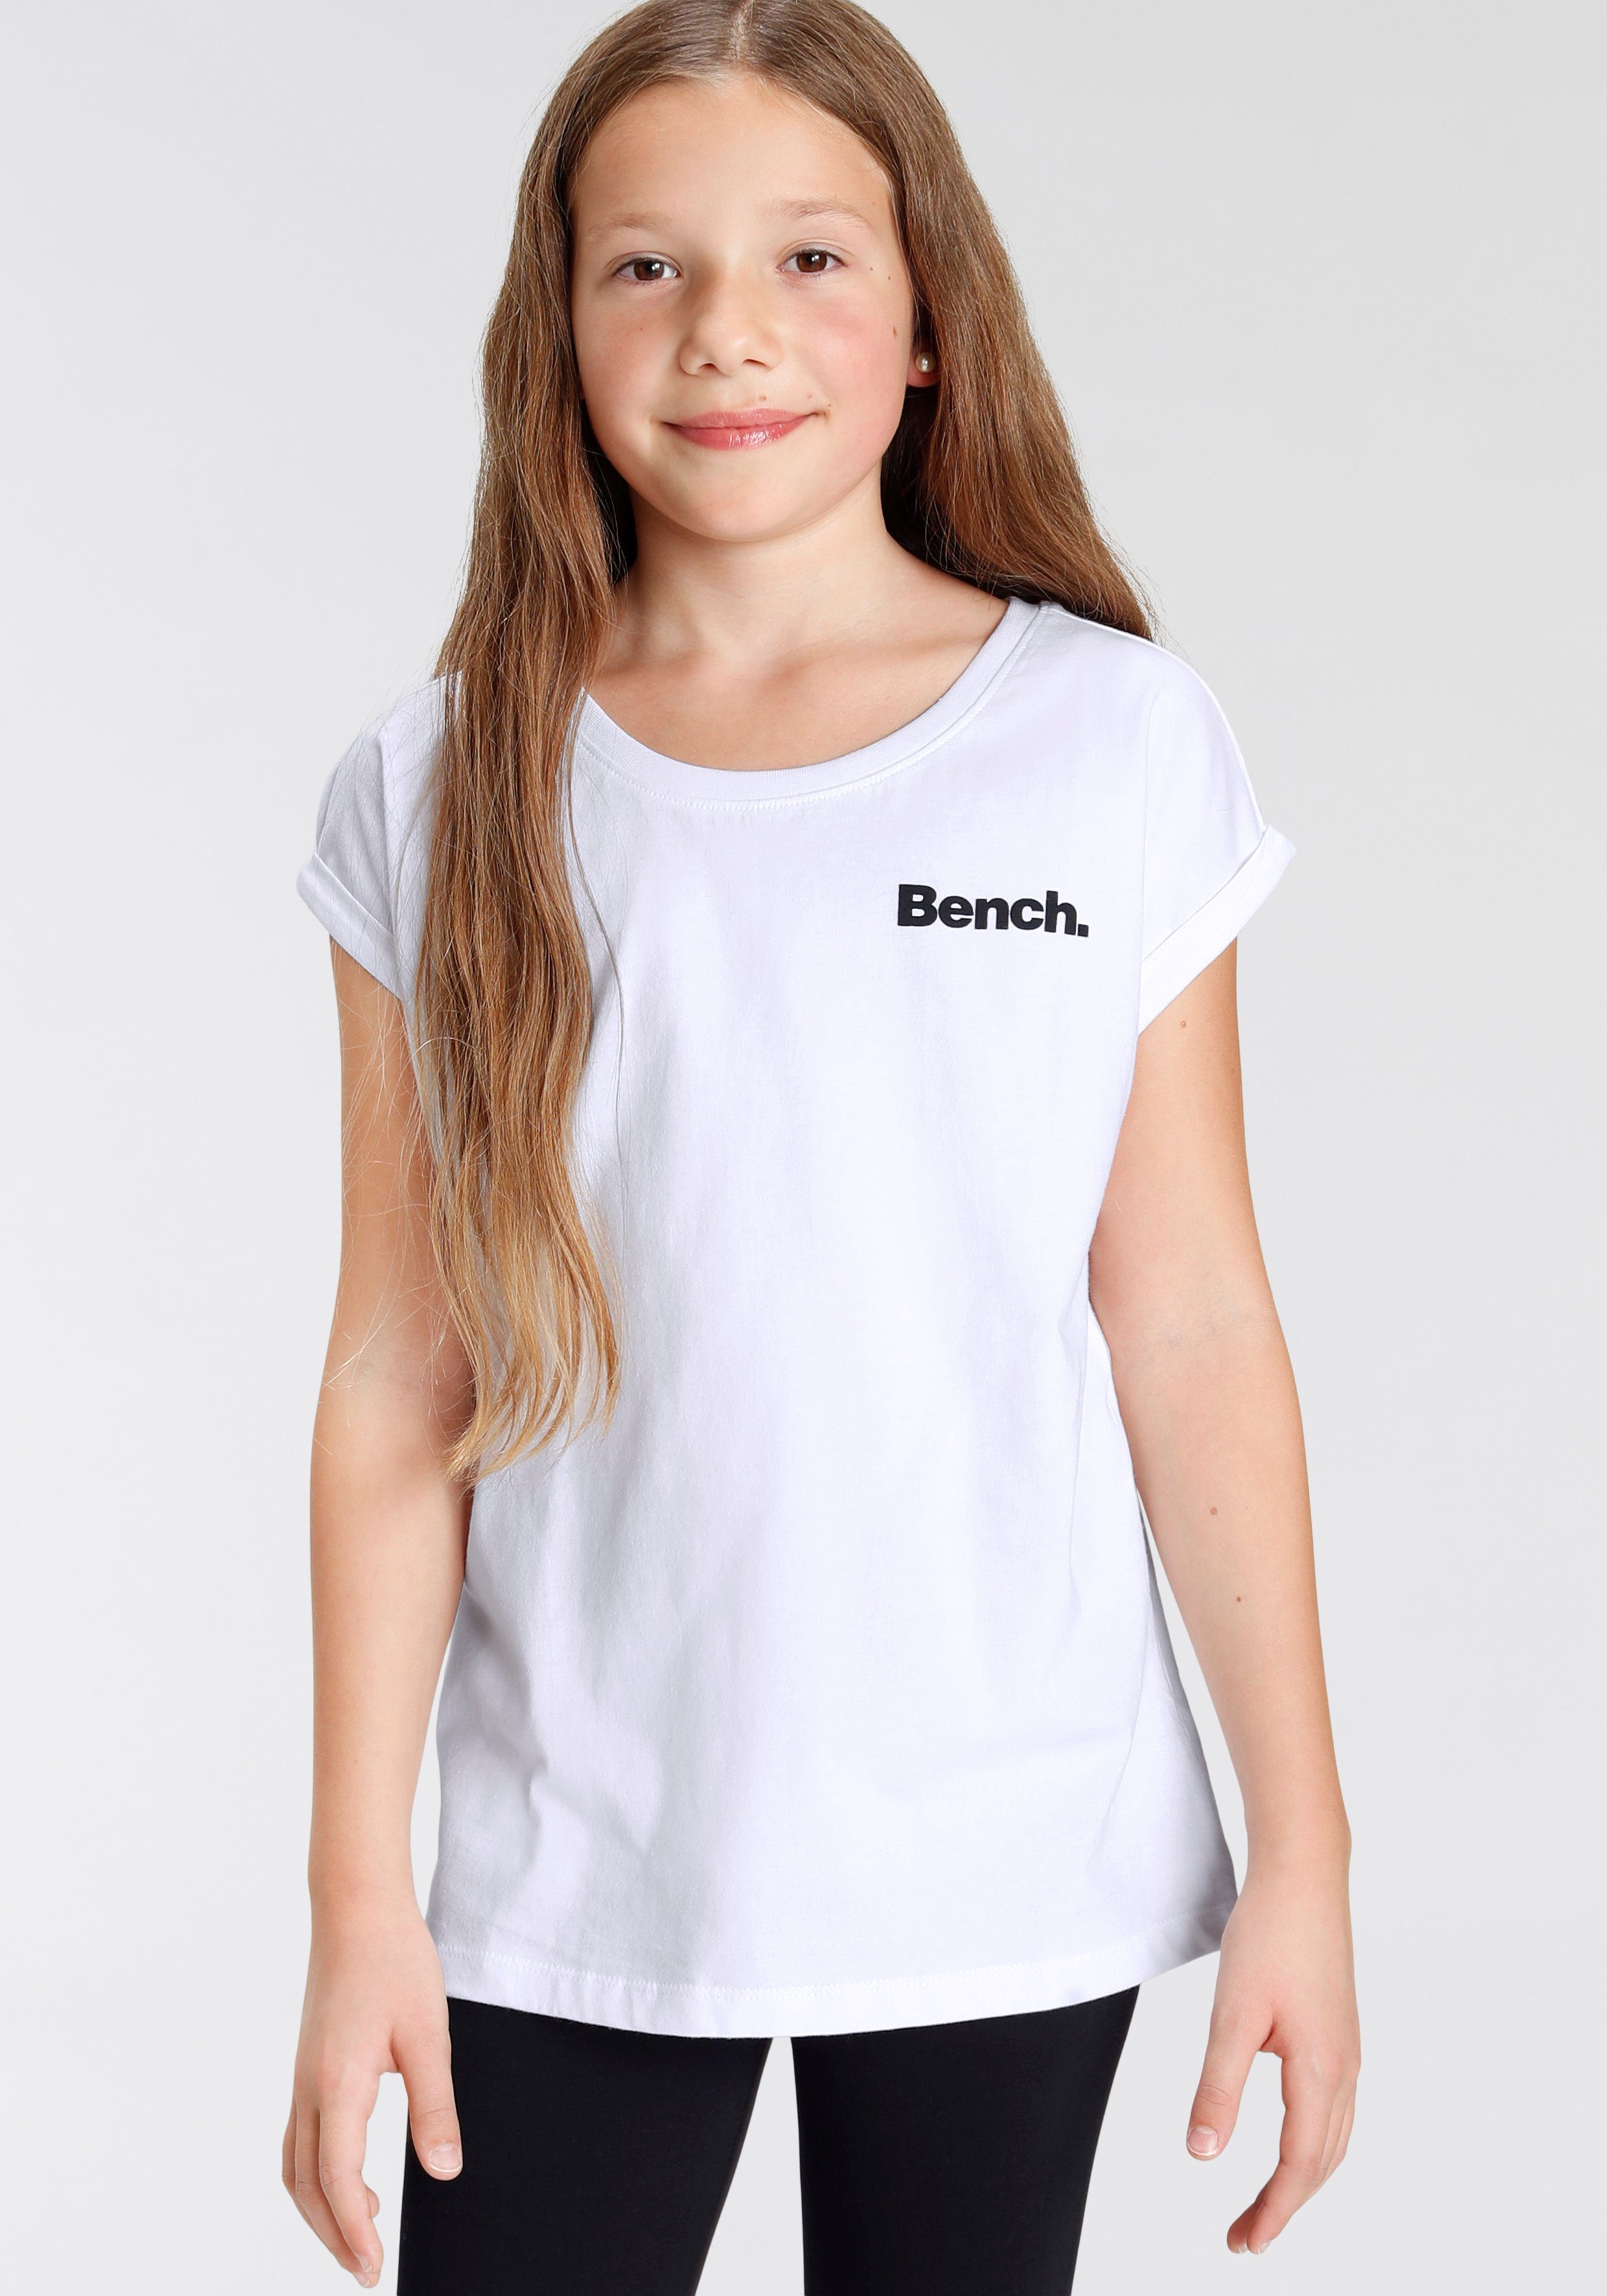 Bench. T-Shirt mit Fotodruck